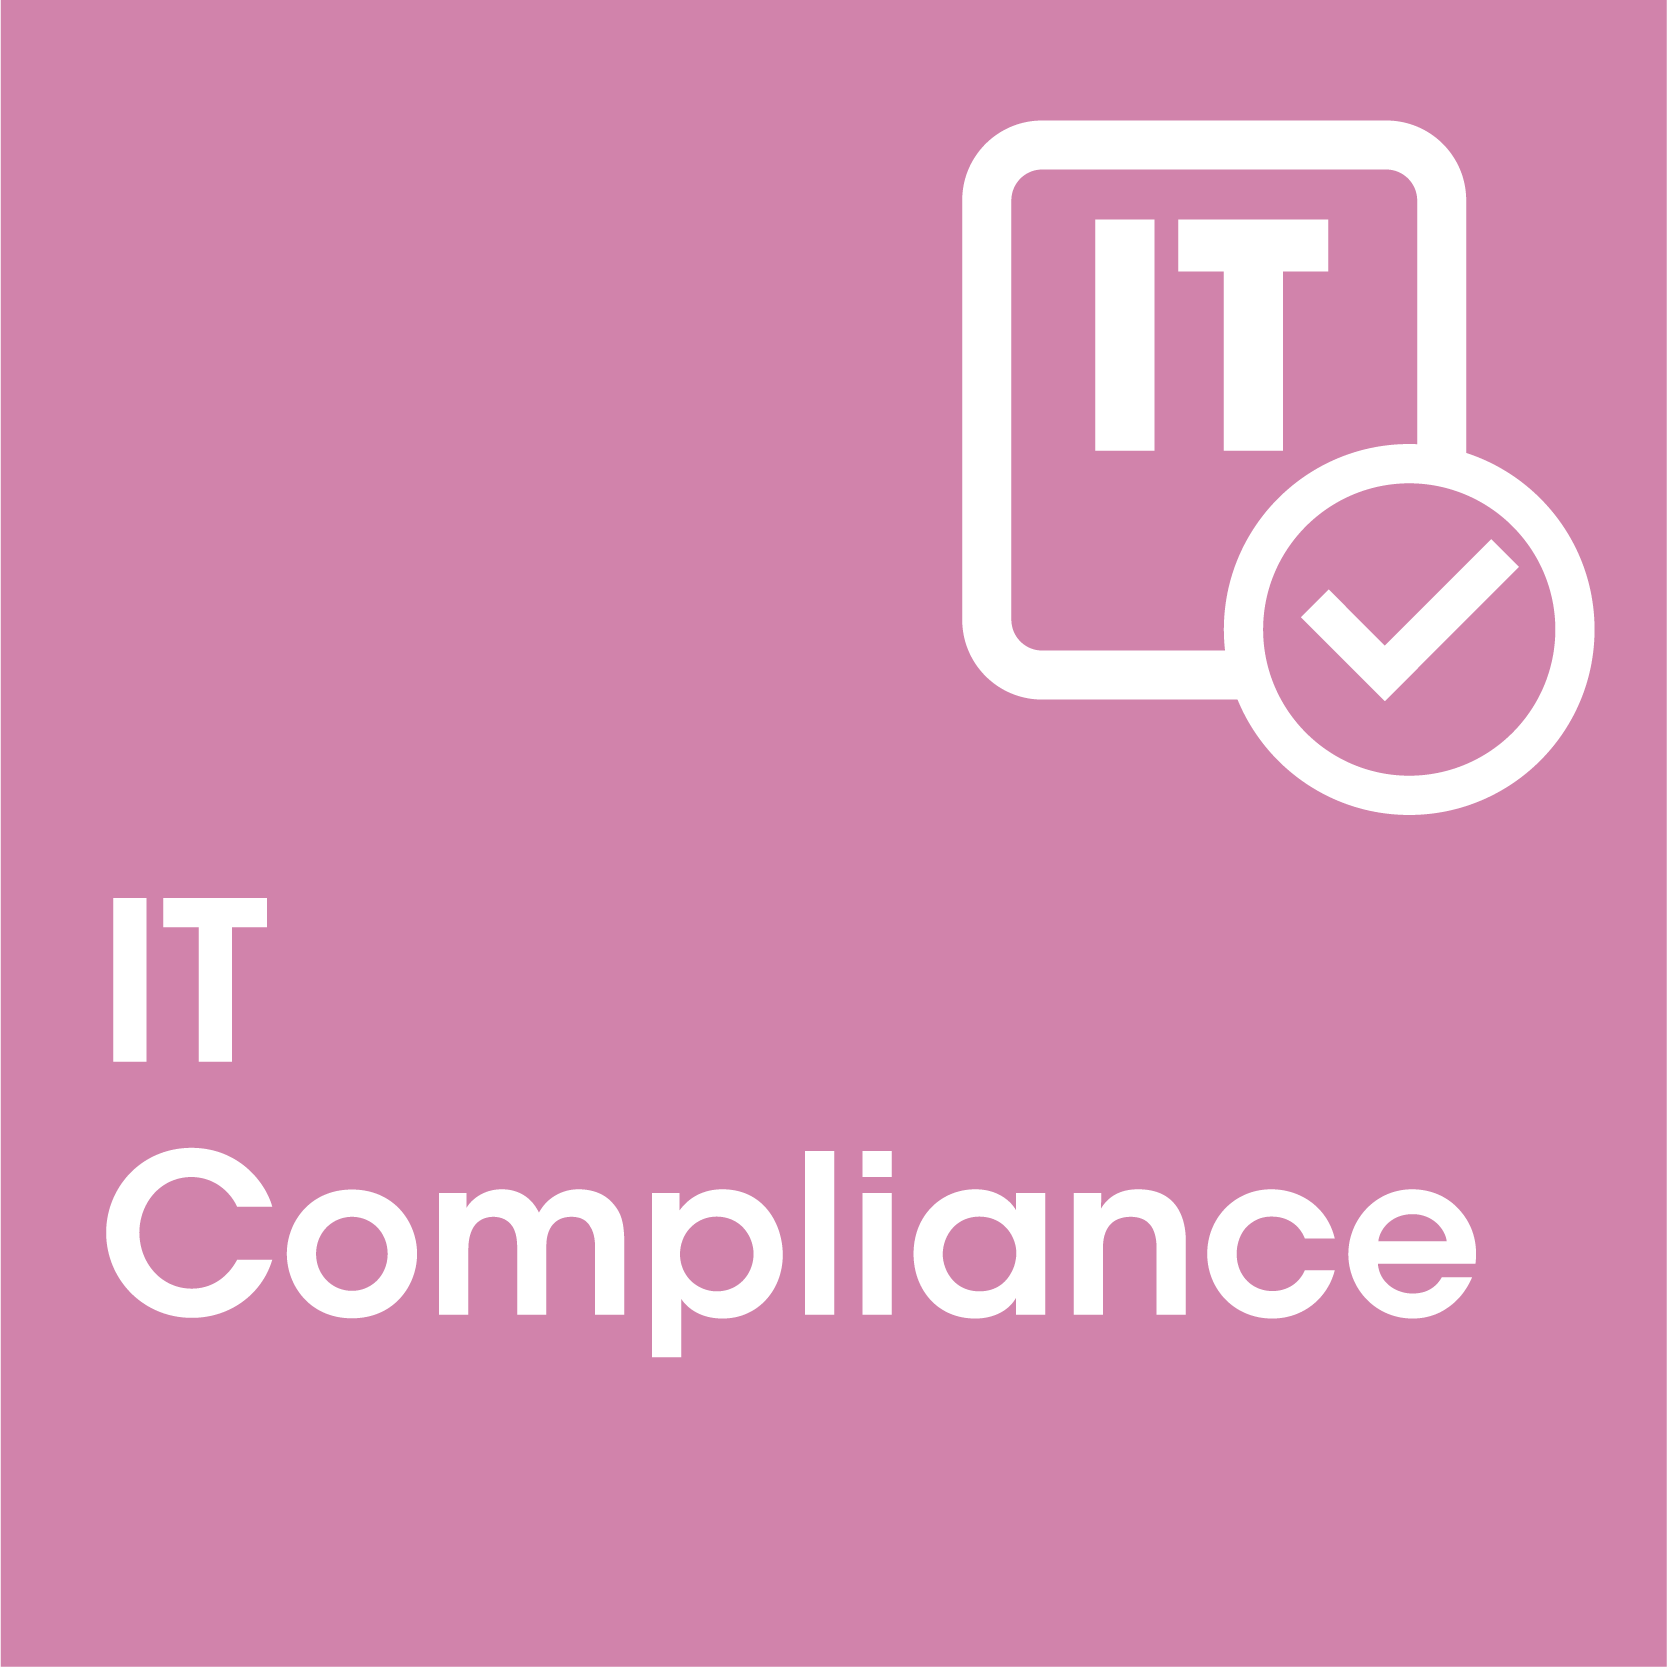 IT Compliance block